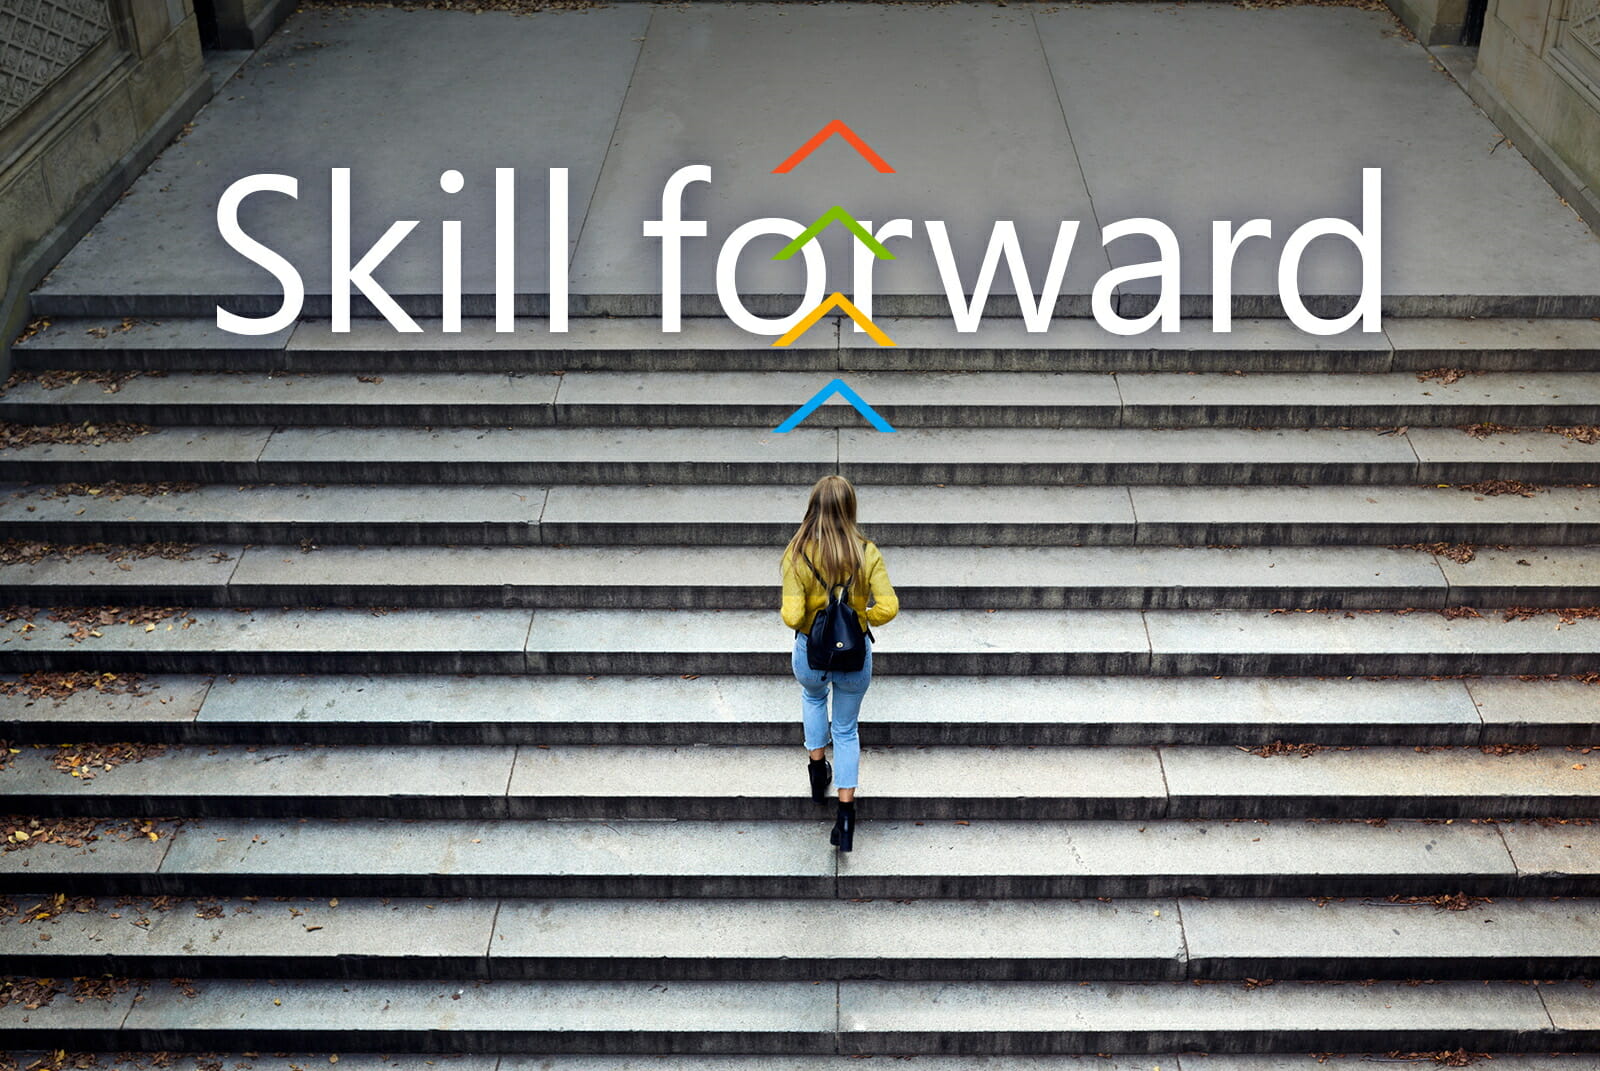 Skill forward